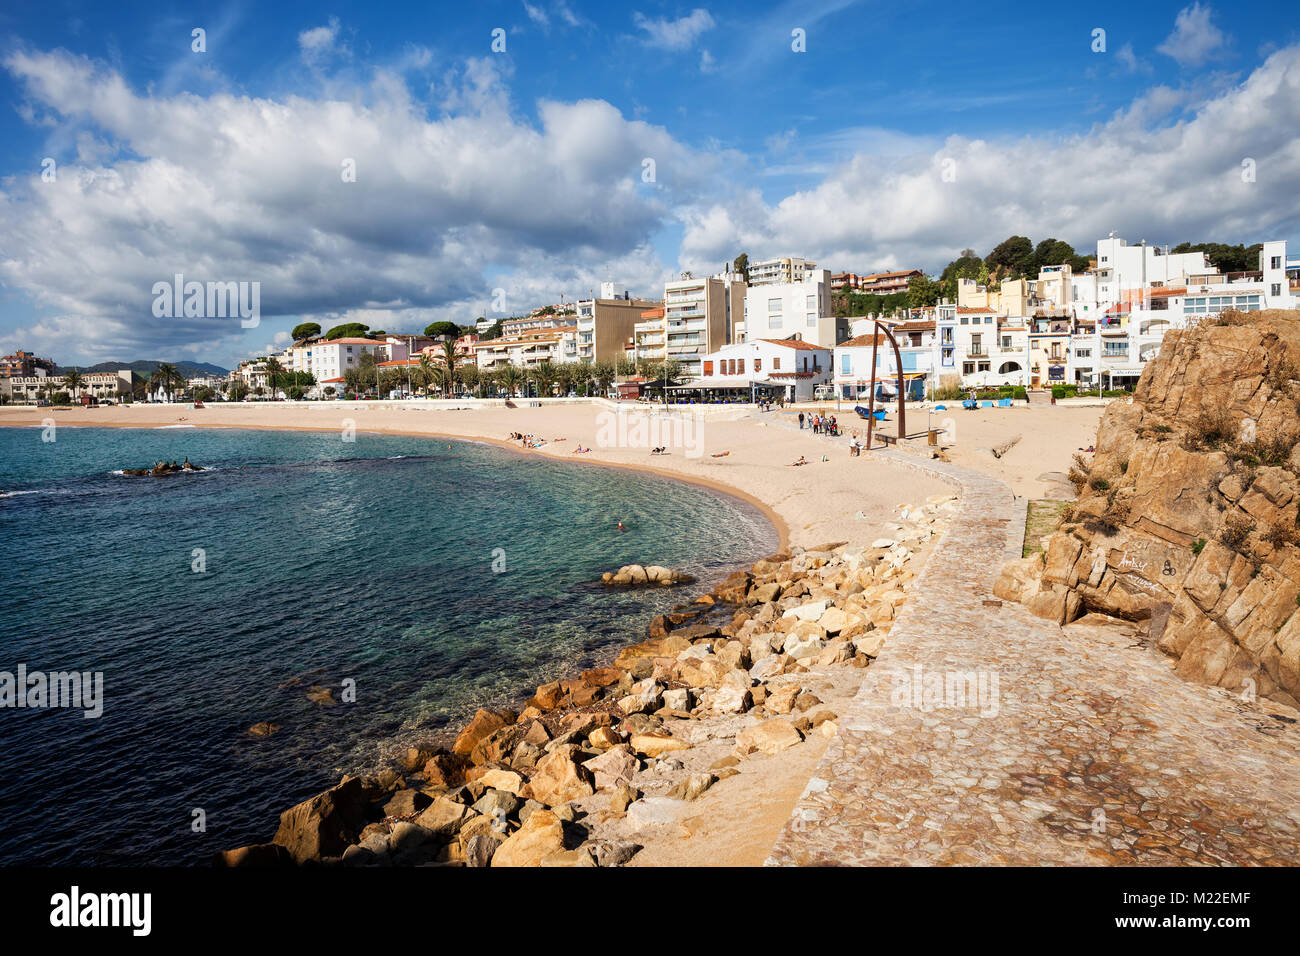 Resort ville côtière de Blanes paysage pittoresque en Catalogne, Espagne, destination populaire sur la Costa Brava à la mer Méditerranée. Banque D'Images